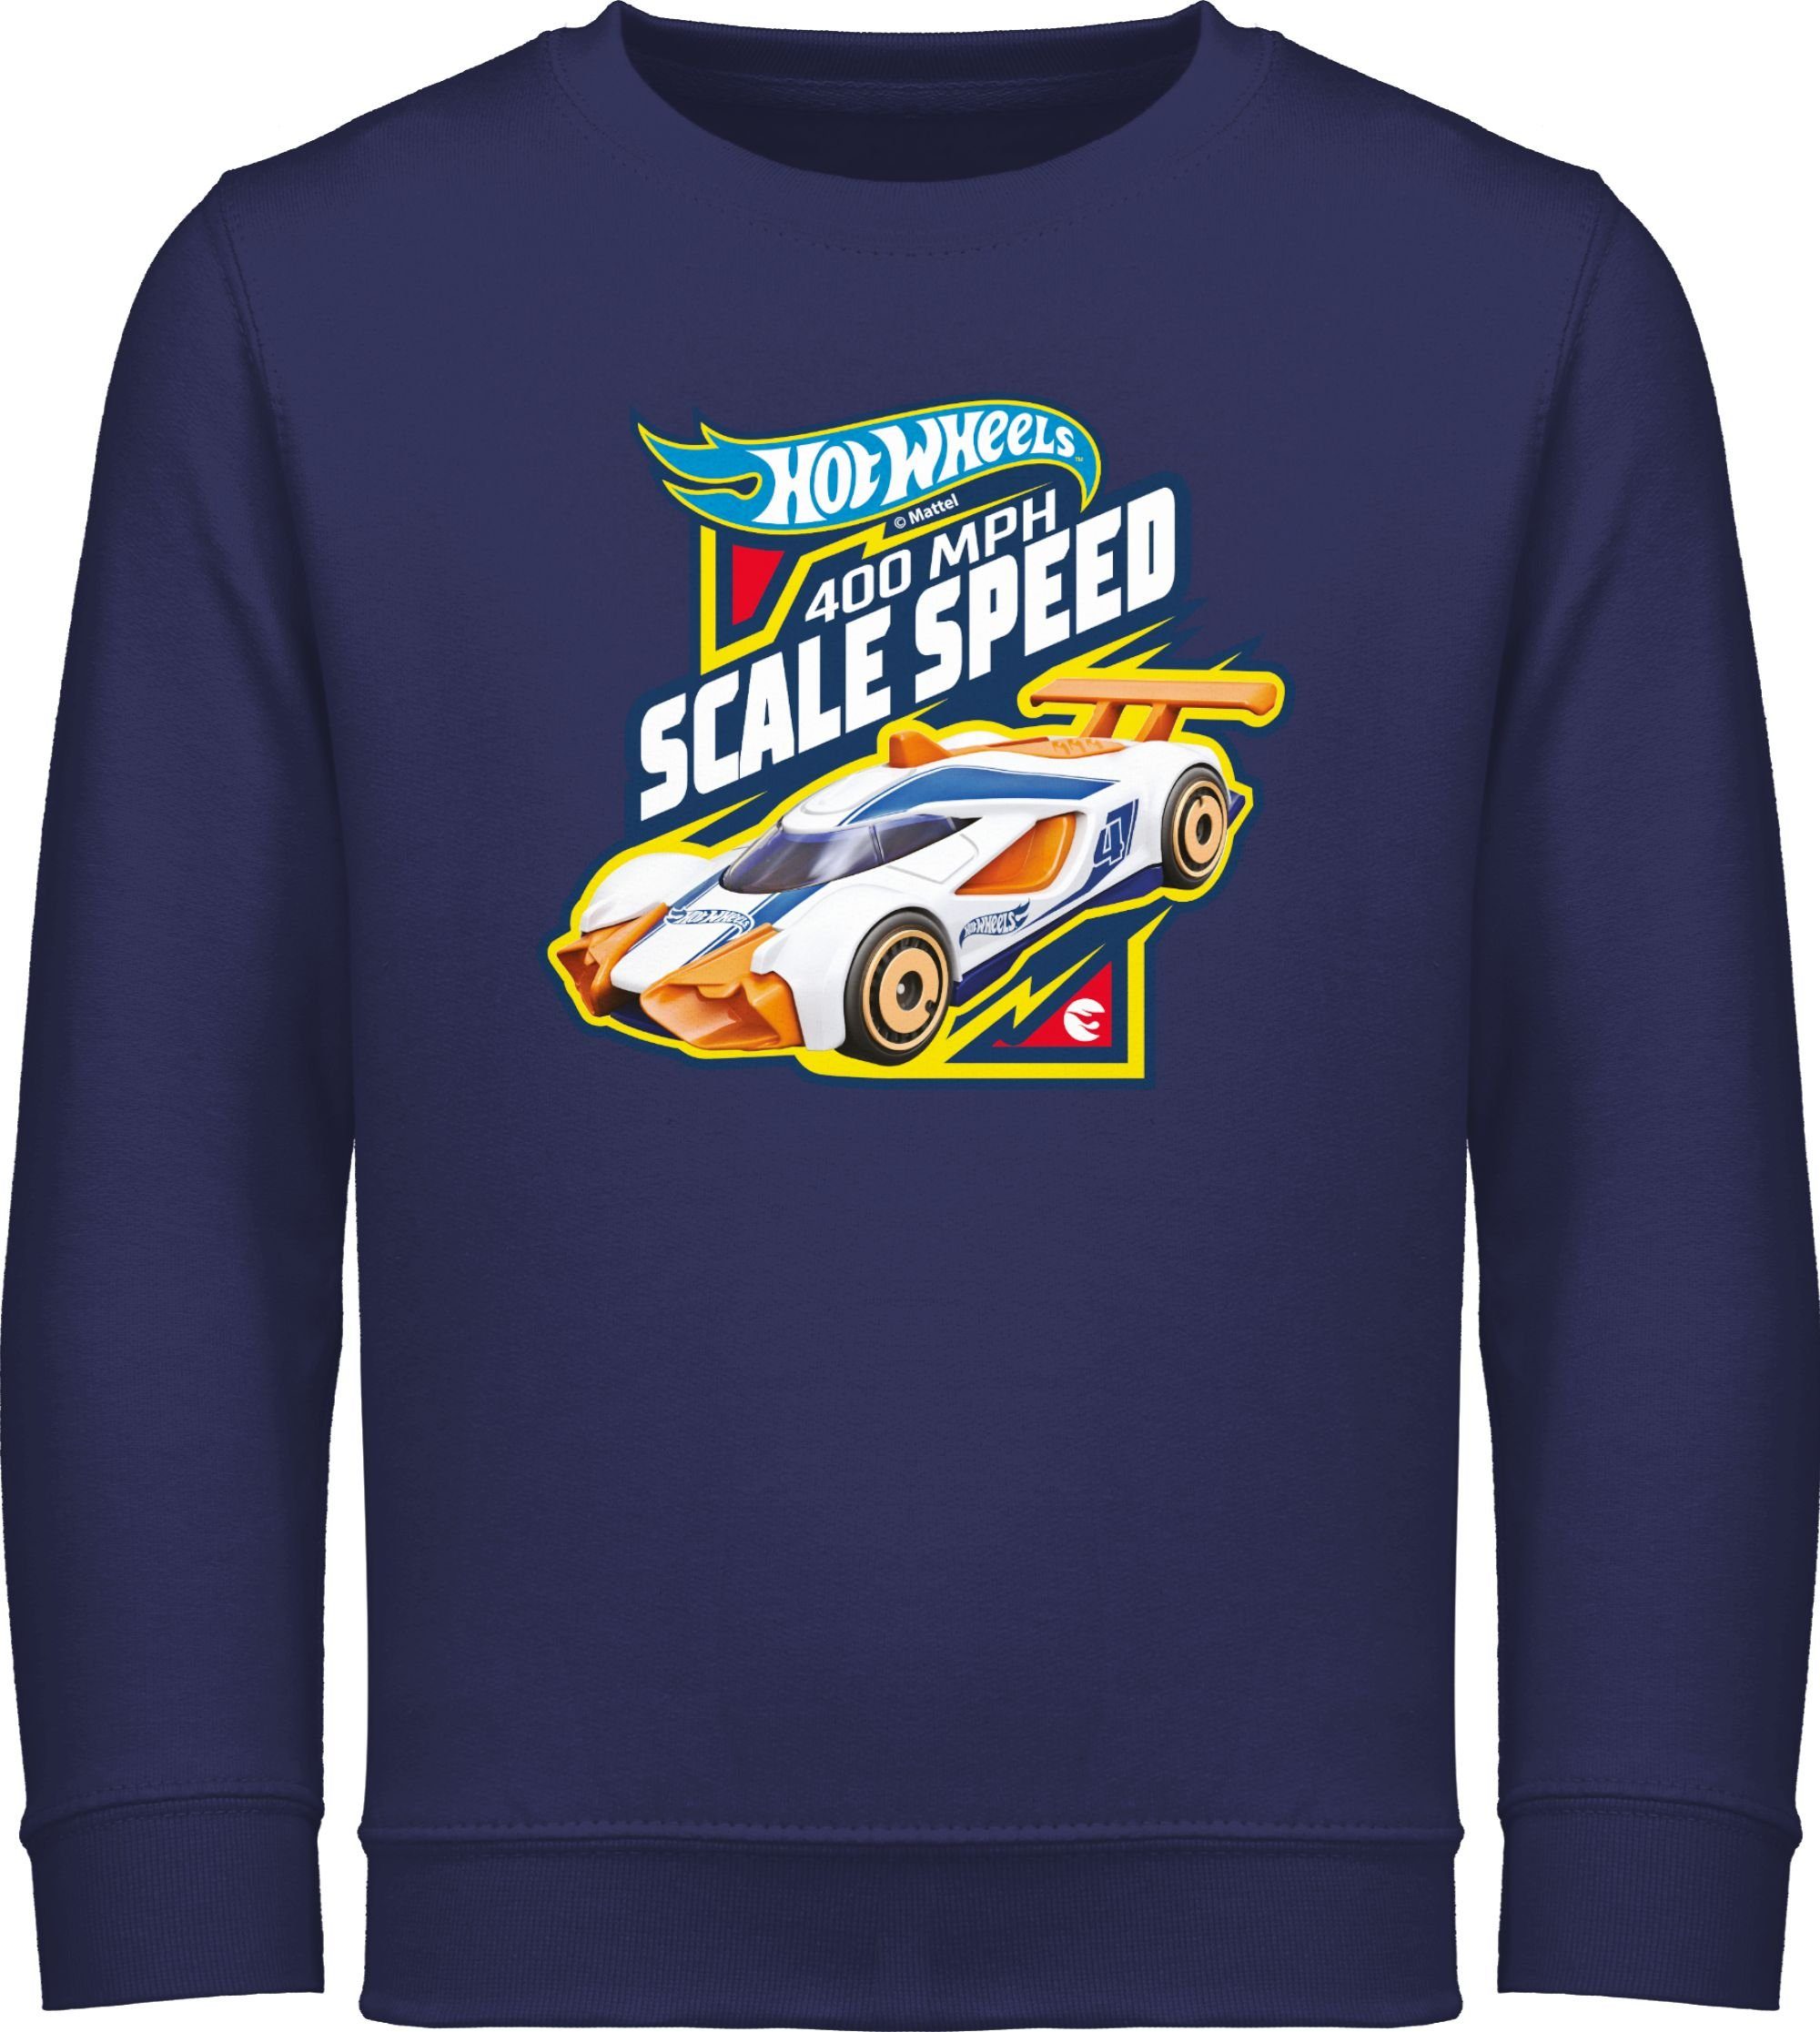 Sweatshirt Navy Mädchen Speed Wheels Shirtracer 400MPH Hot 2 Scale Blau